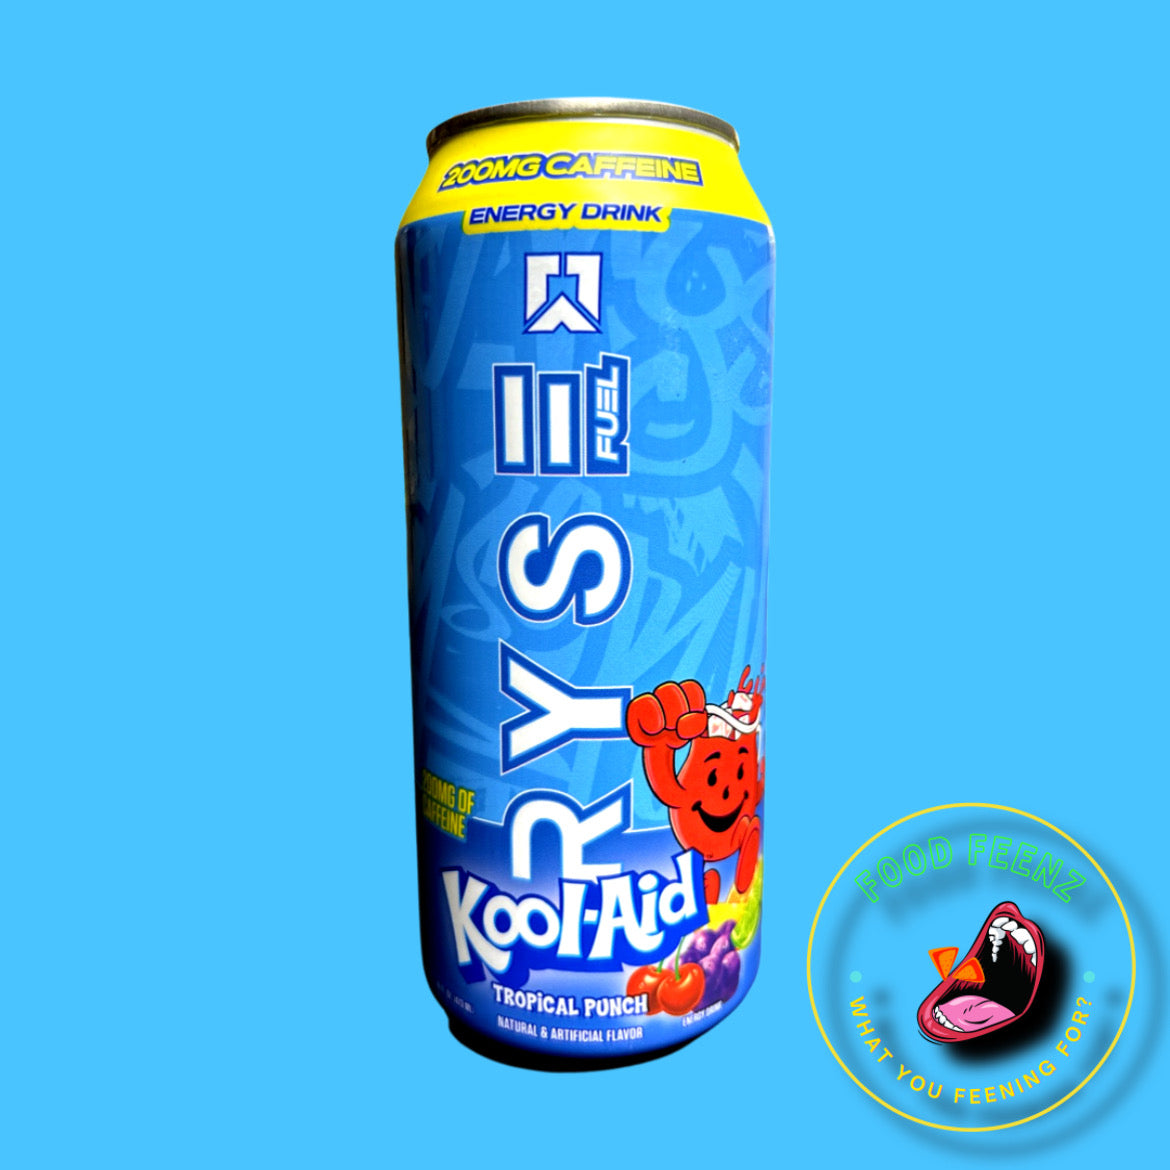 RYSE Fuel Kool-aid Flavored Energy Drink